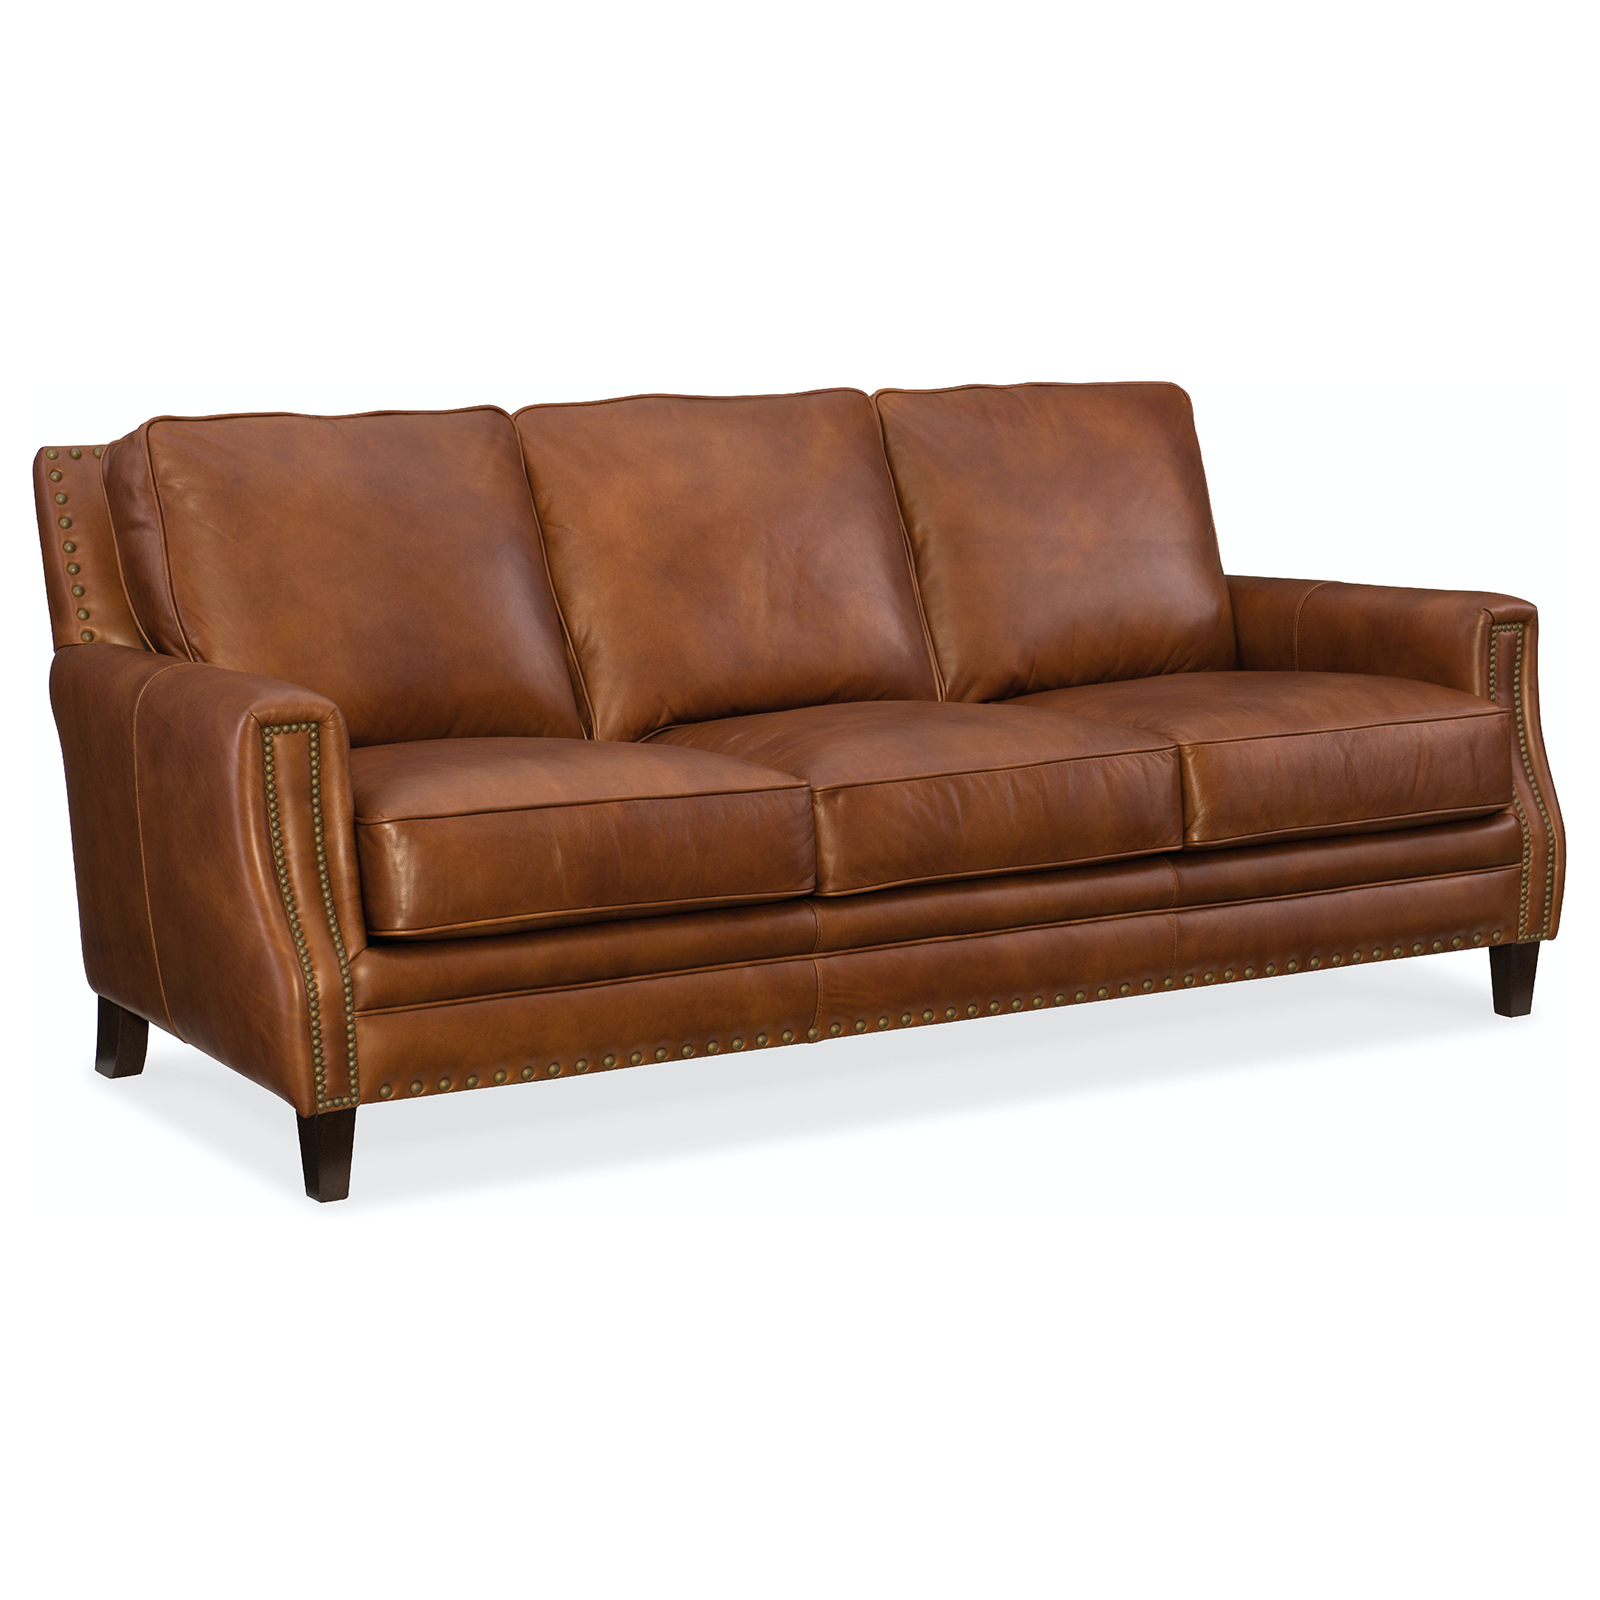 Embry 83" Leather Sofa